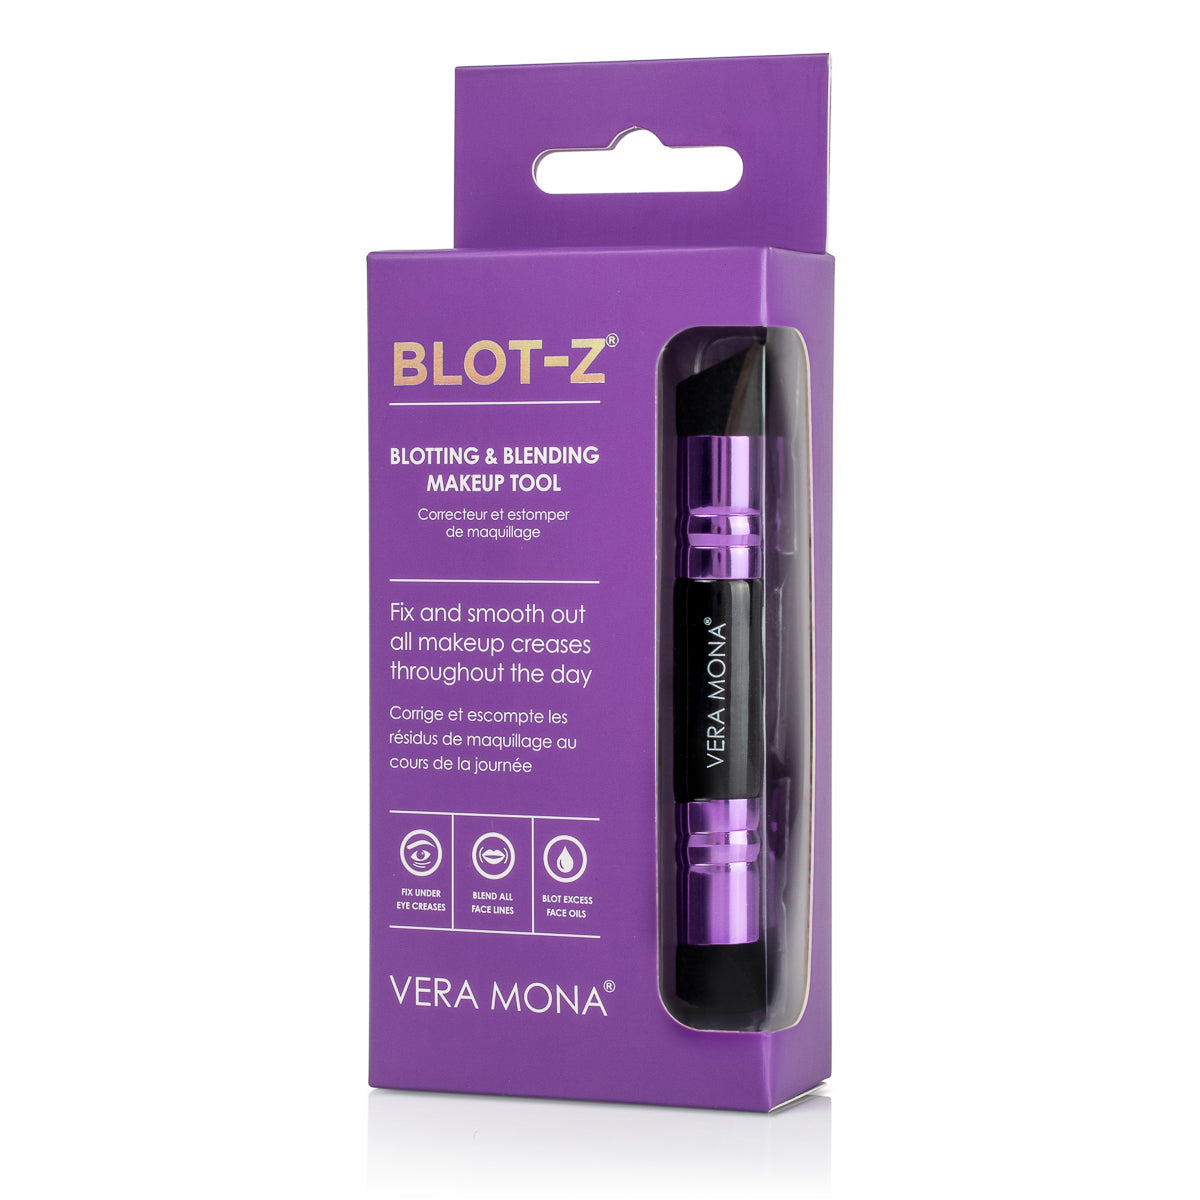 Blot-Z® Blotting & Blending Tool